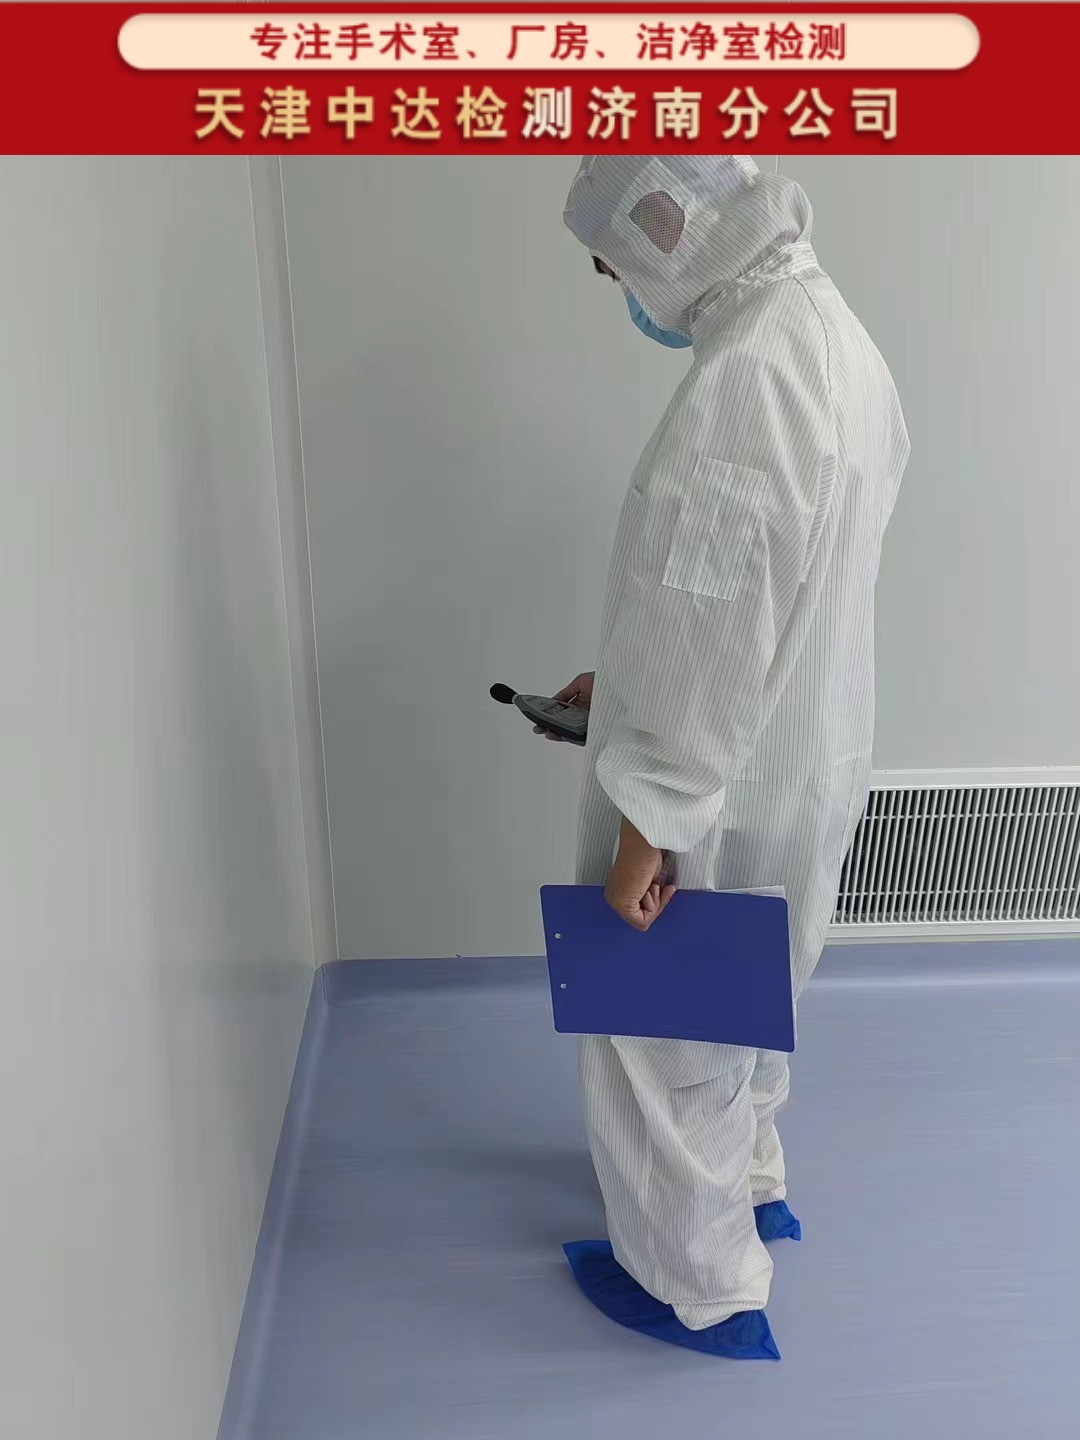 日照五莲县层流净化手术室洁净环境检测内容和方法-天津中达检测济南分公司